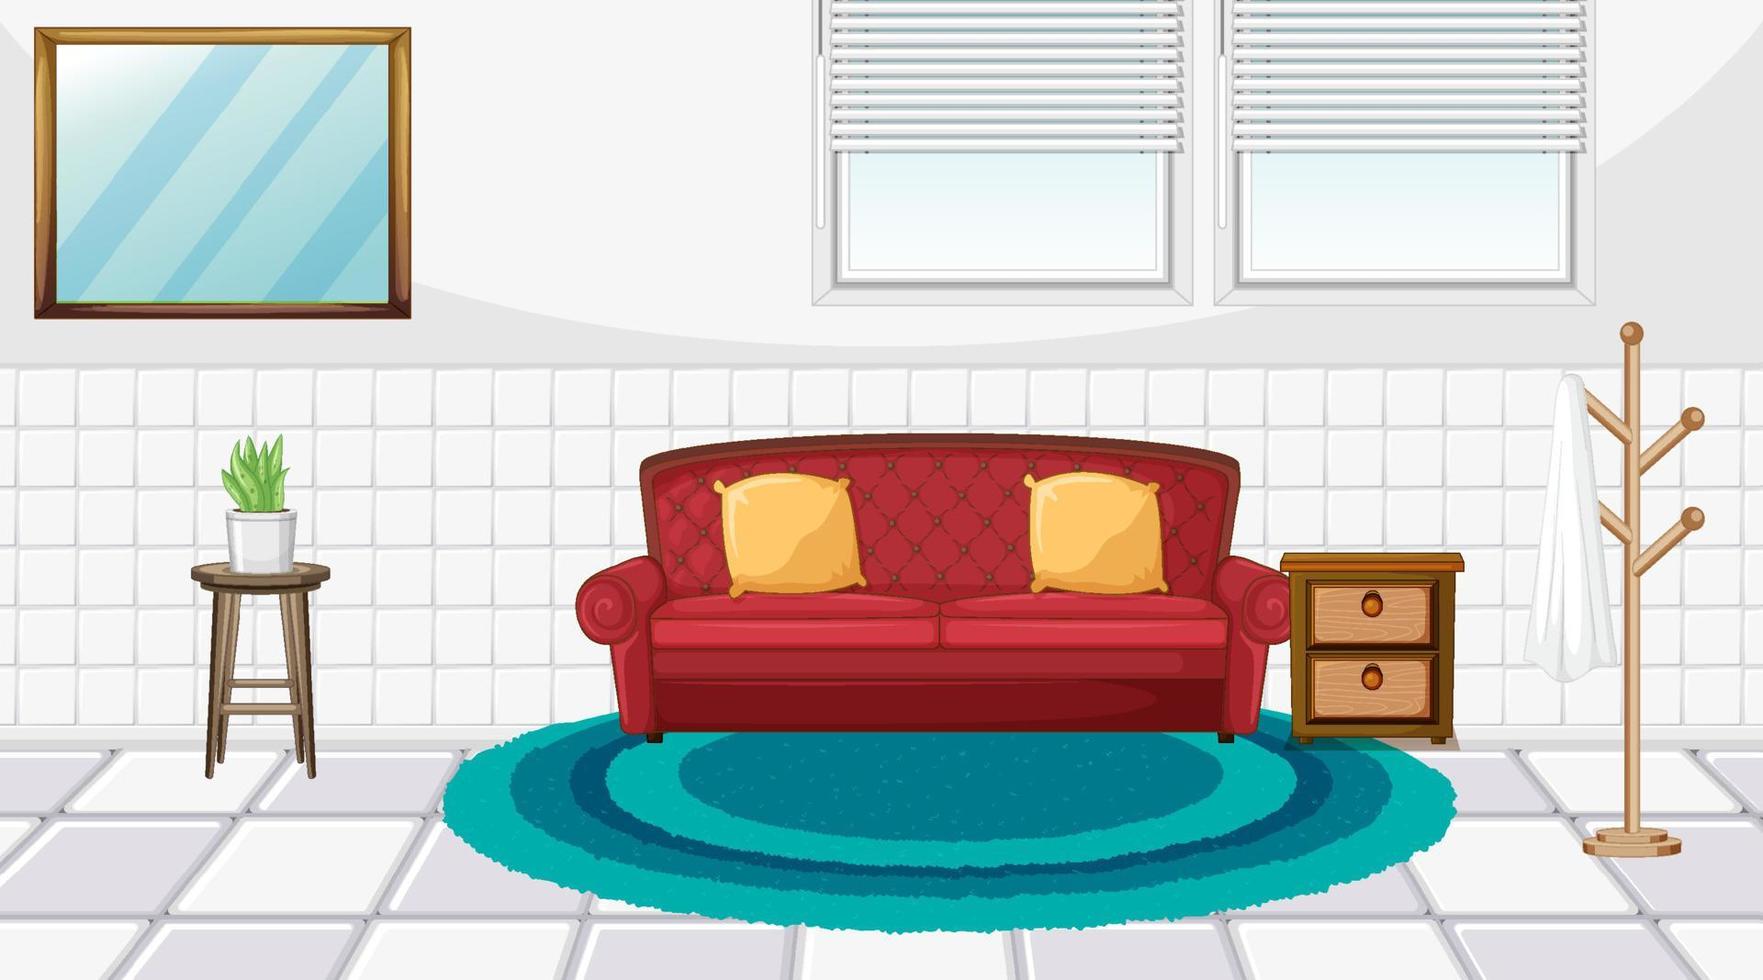 design d'intérieur de salon avec des meubles vecteur